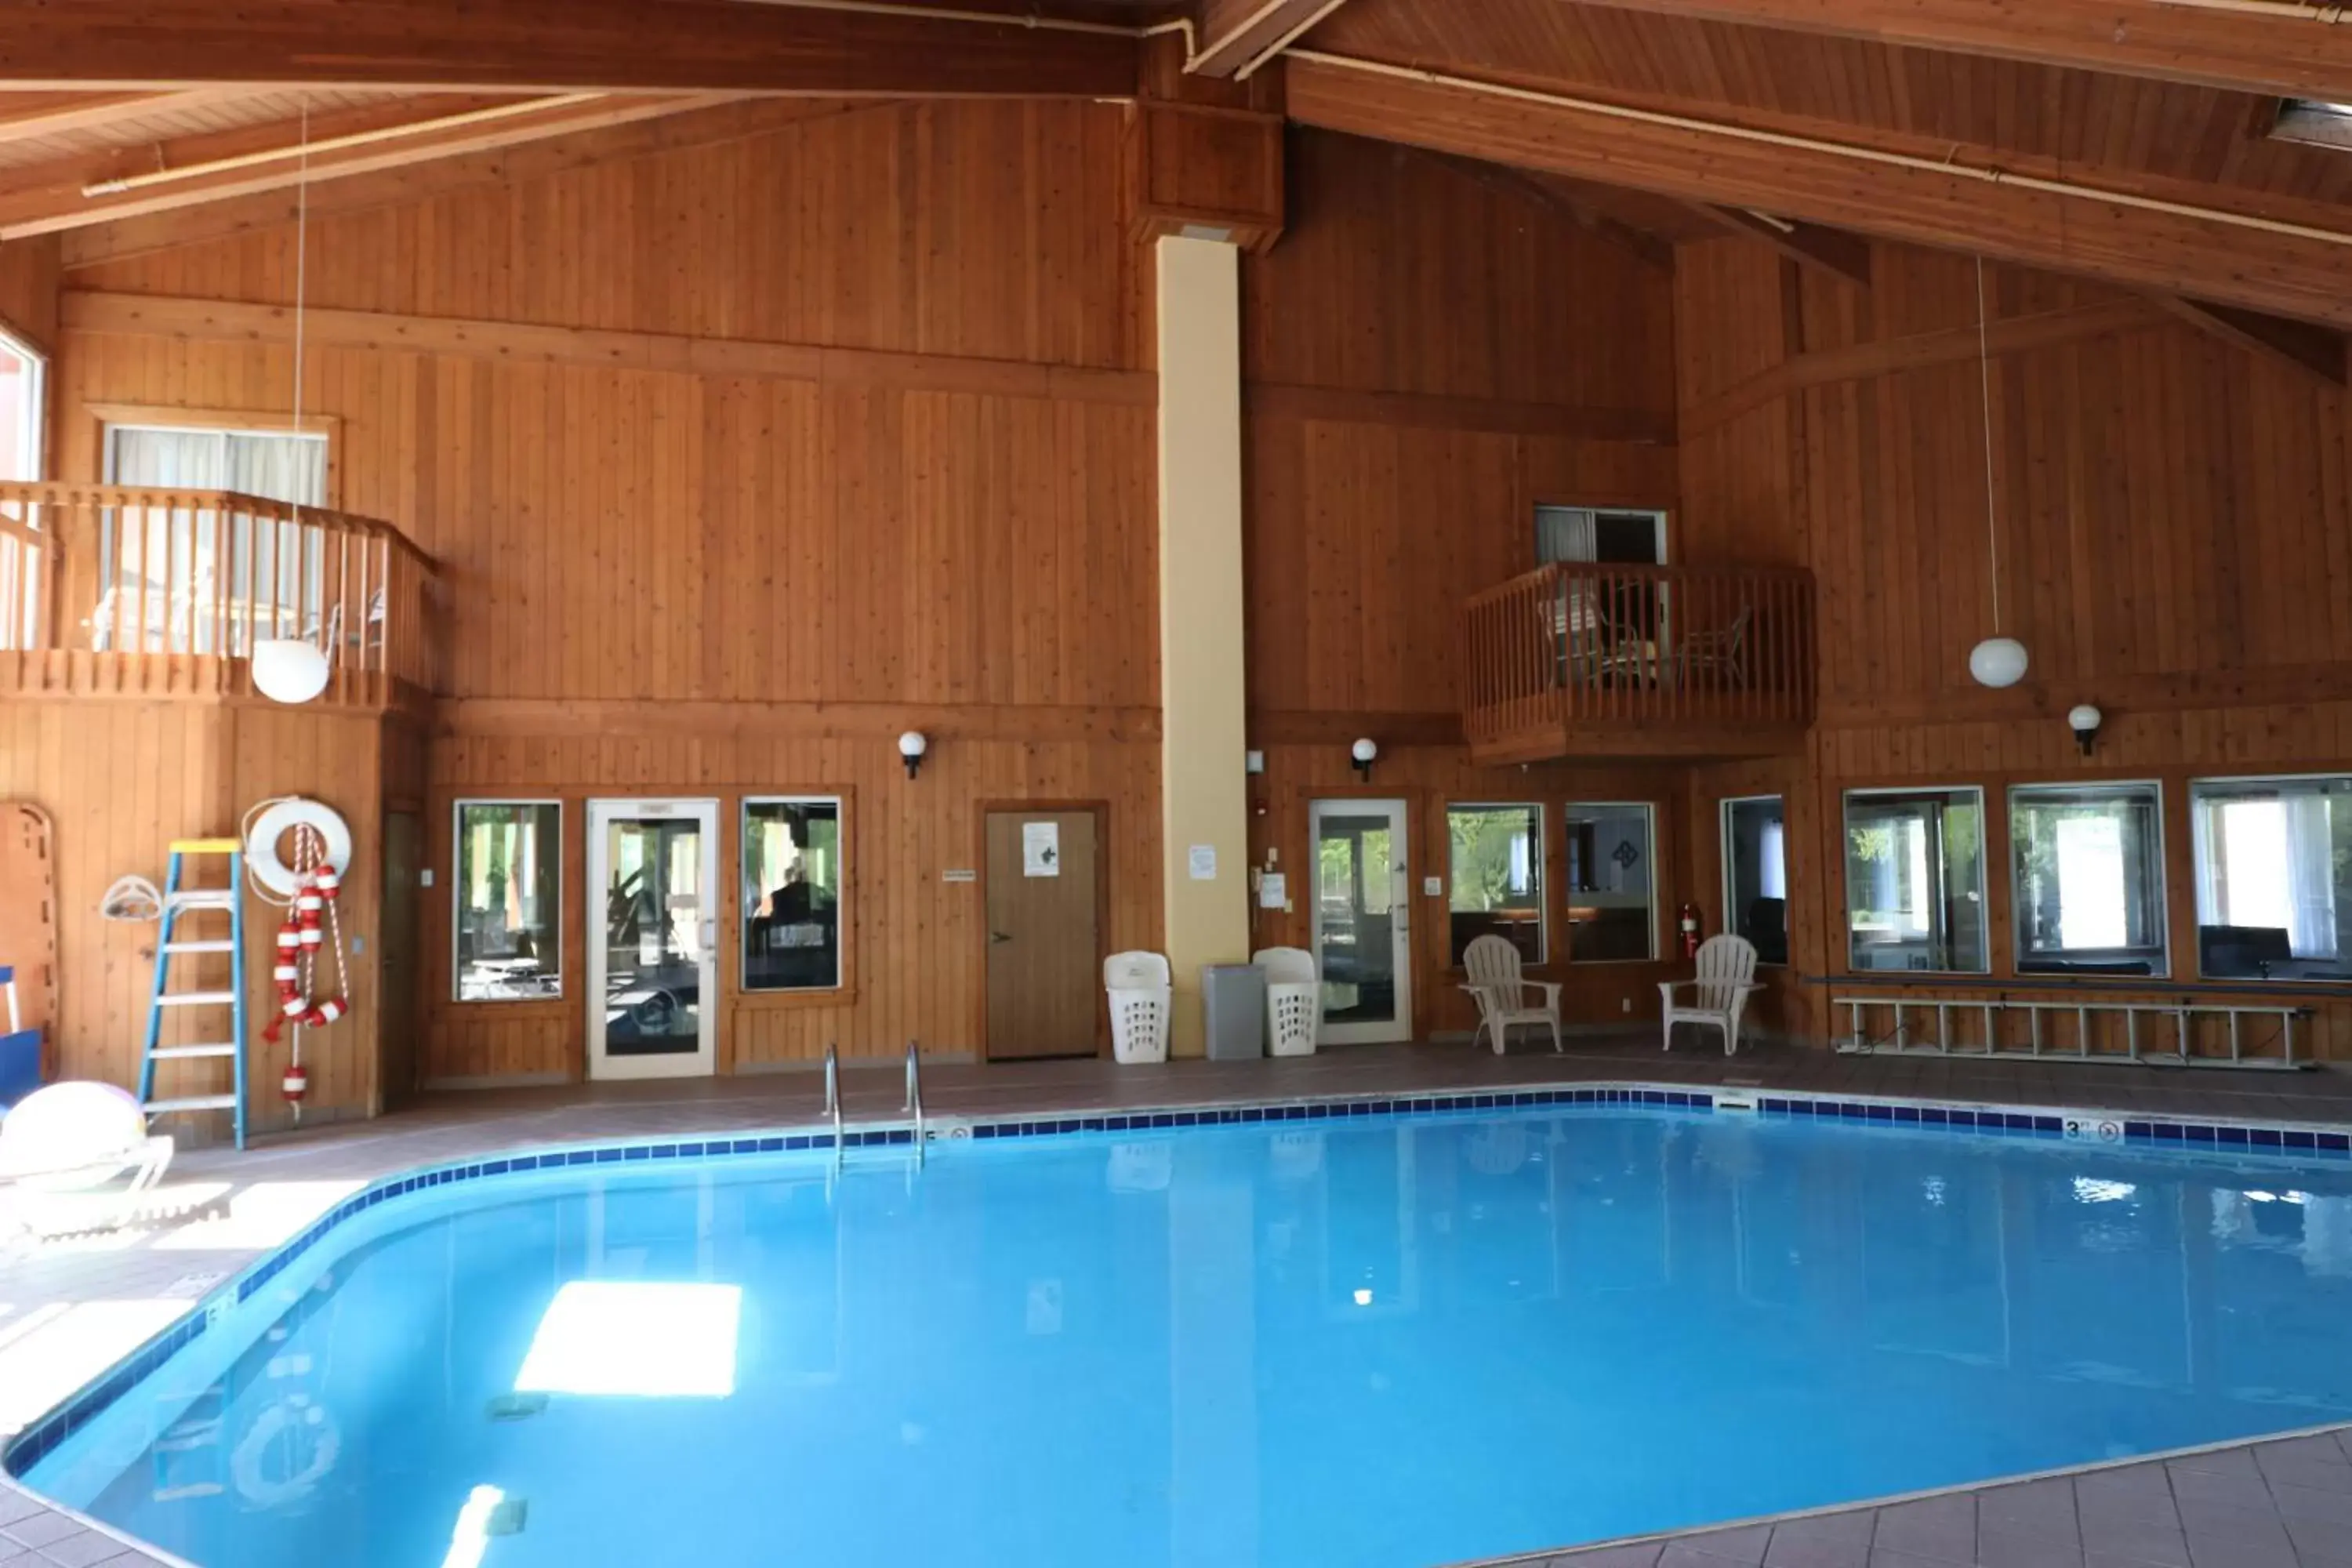 Swimming Pool in College Inn